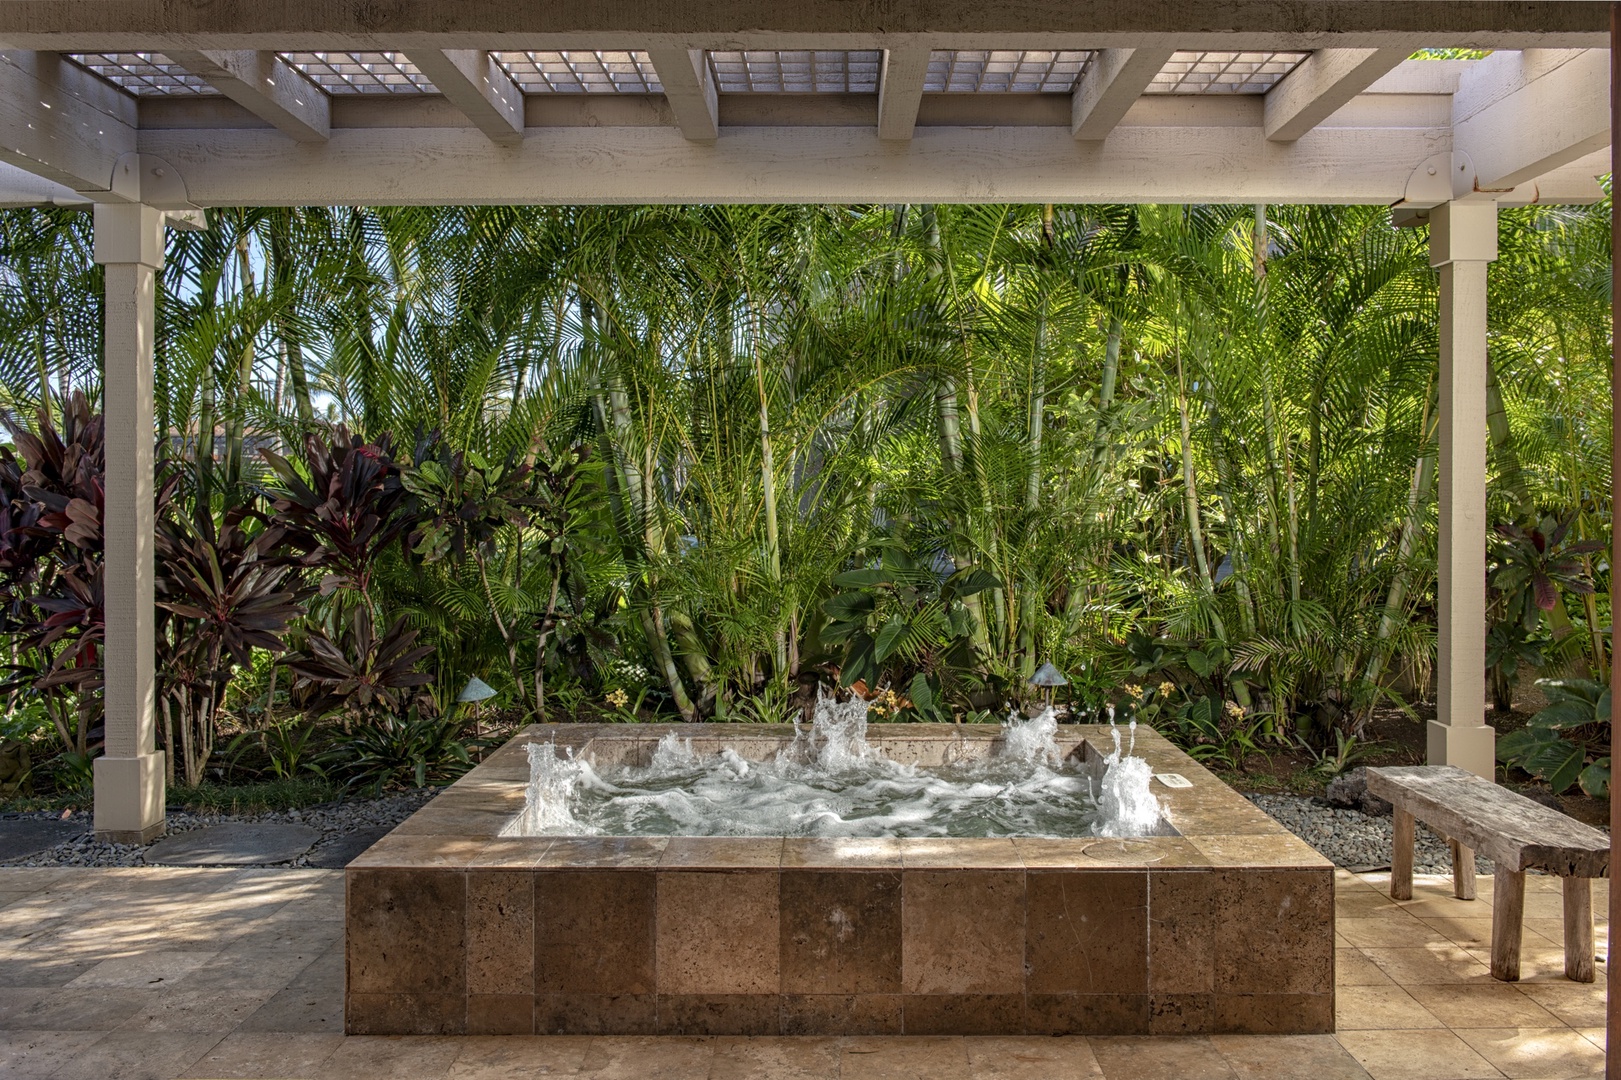 Kailua Kona Vacation Rentals, 3BD Golf Villa (3101) at Four Seasons Resort at Hualalai - Private hot tub on generous lanai w/ front row ocean & golf course views.